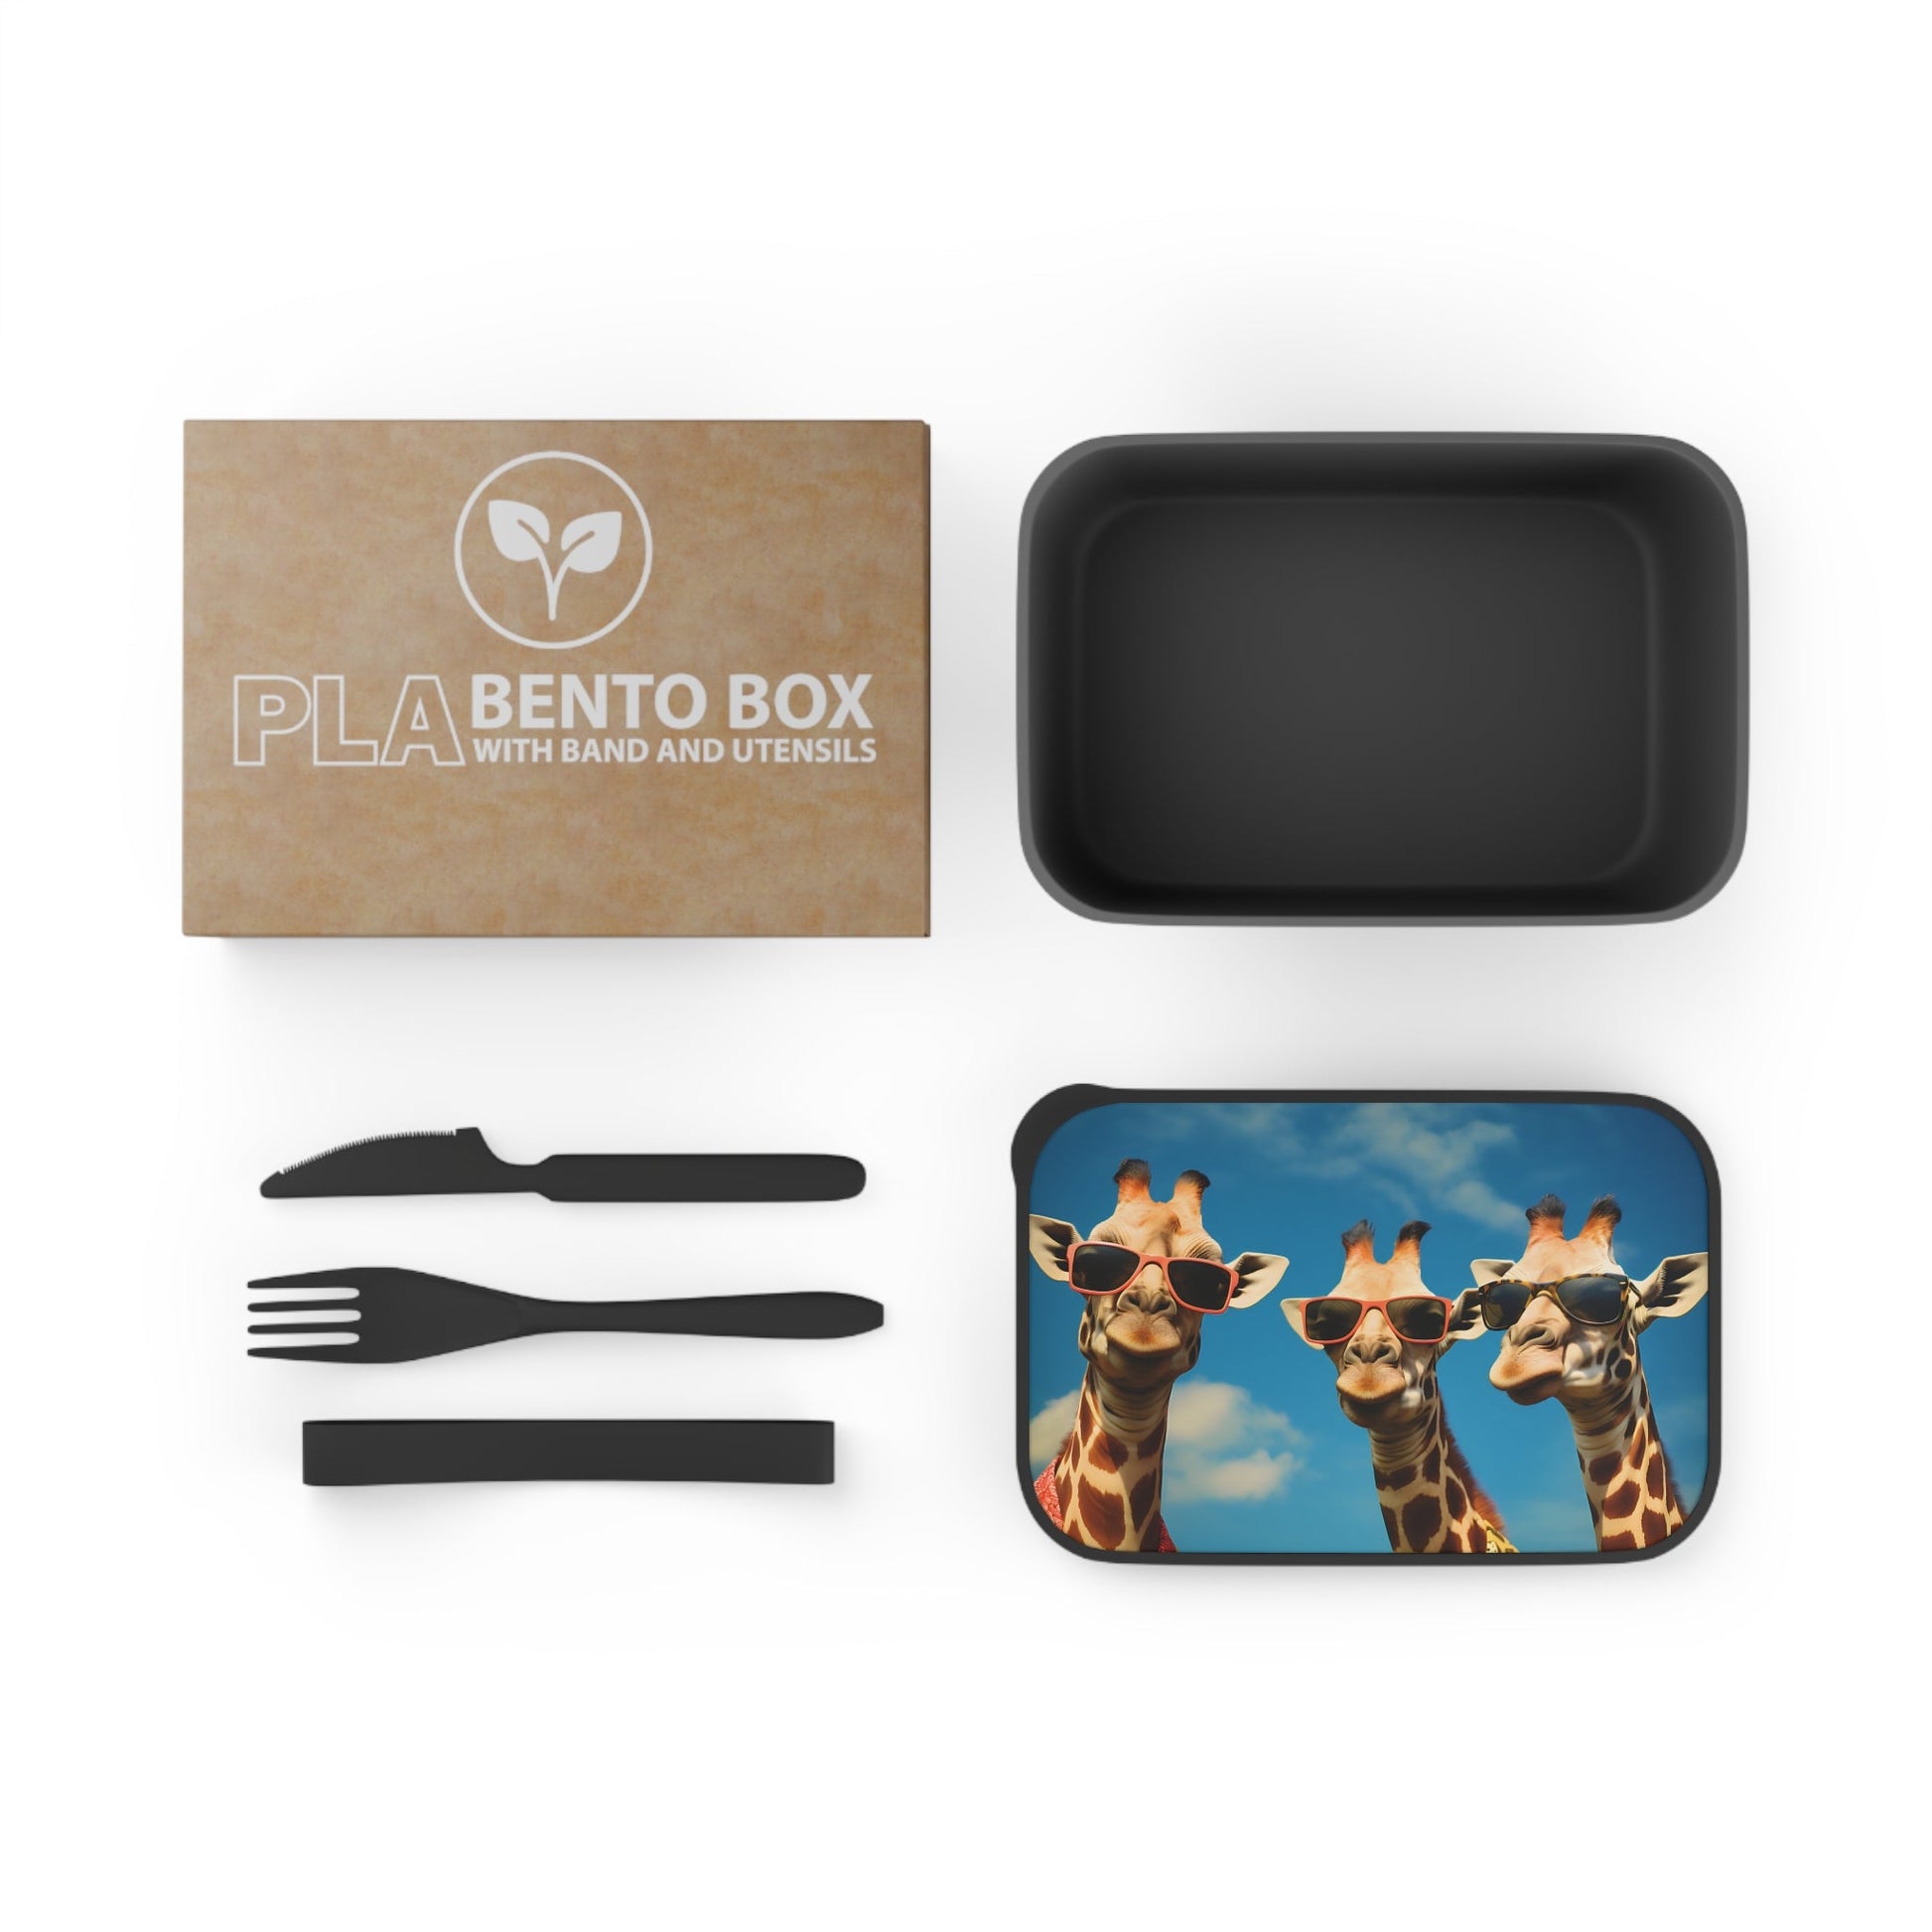 Three Beach Bum Giraffes in Sunglasses | PLA Bento Box with Band and Utensils